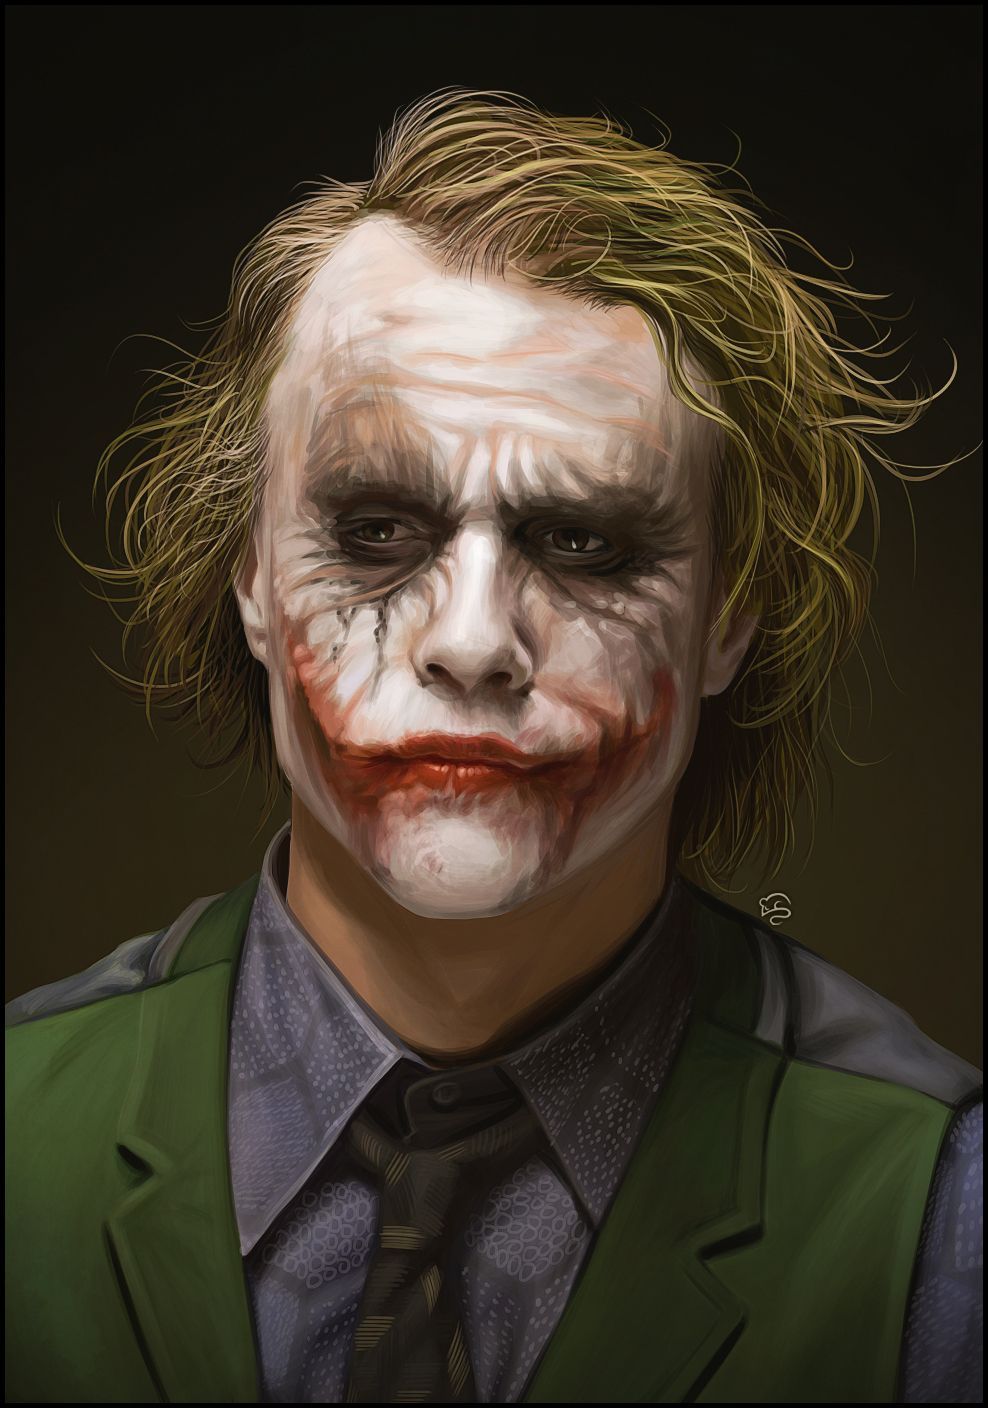 The Joker Heath Ledger Wallpaper - wallpaper.